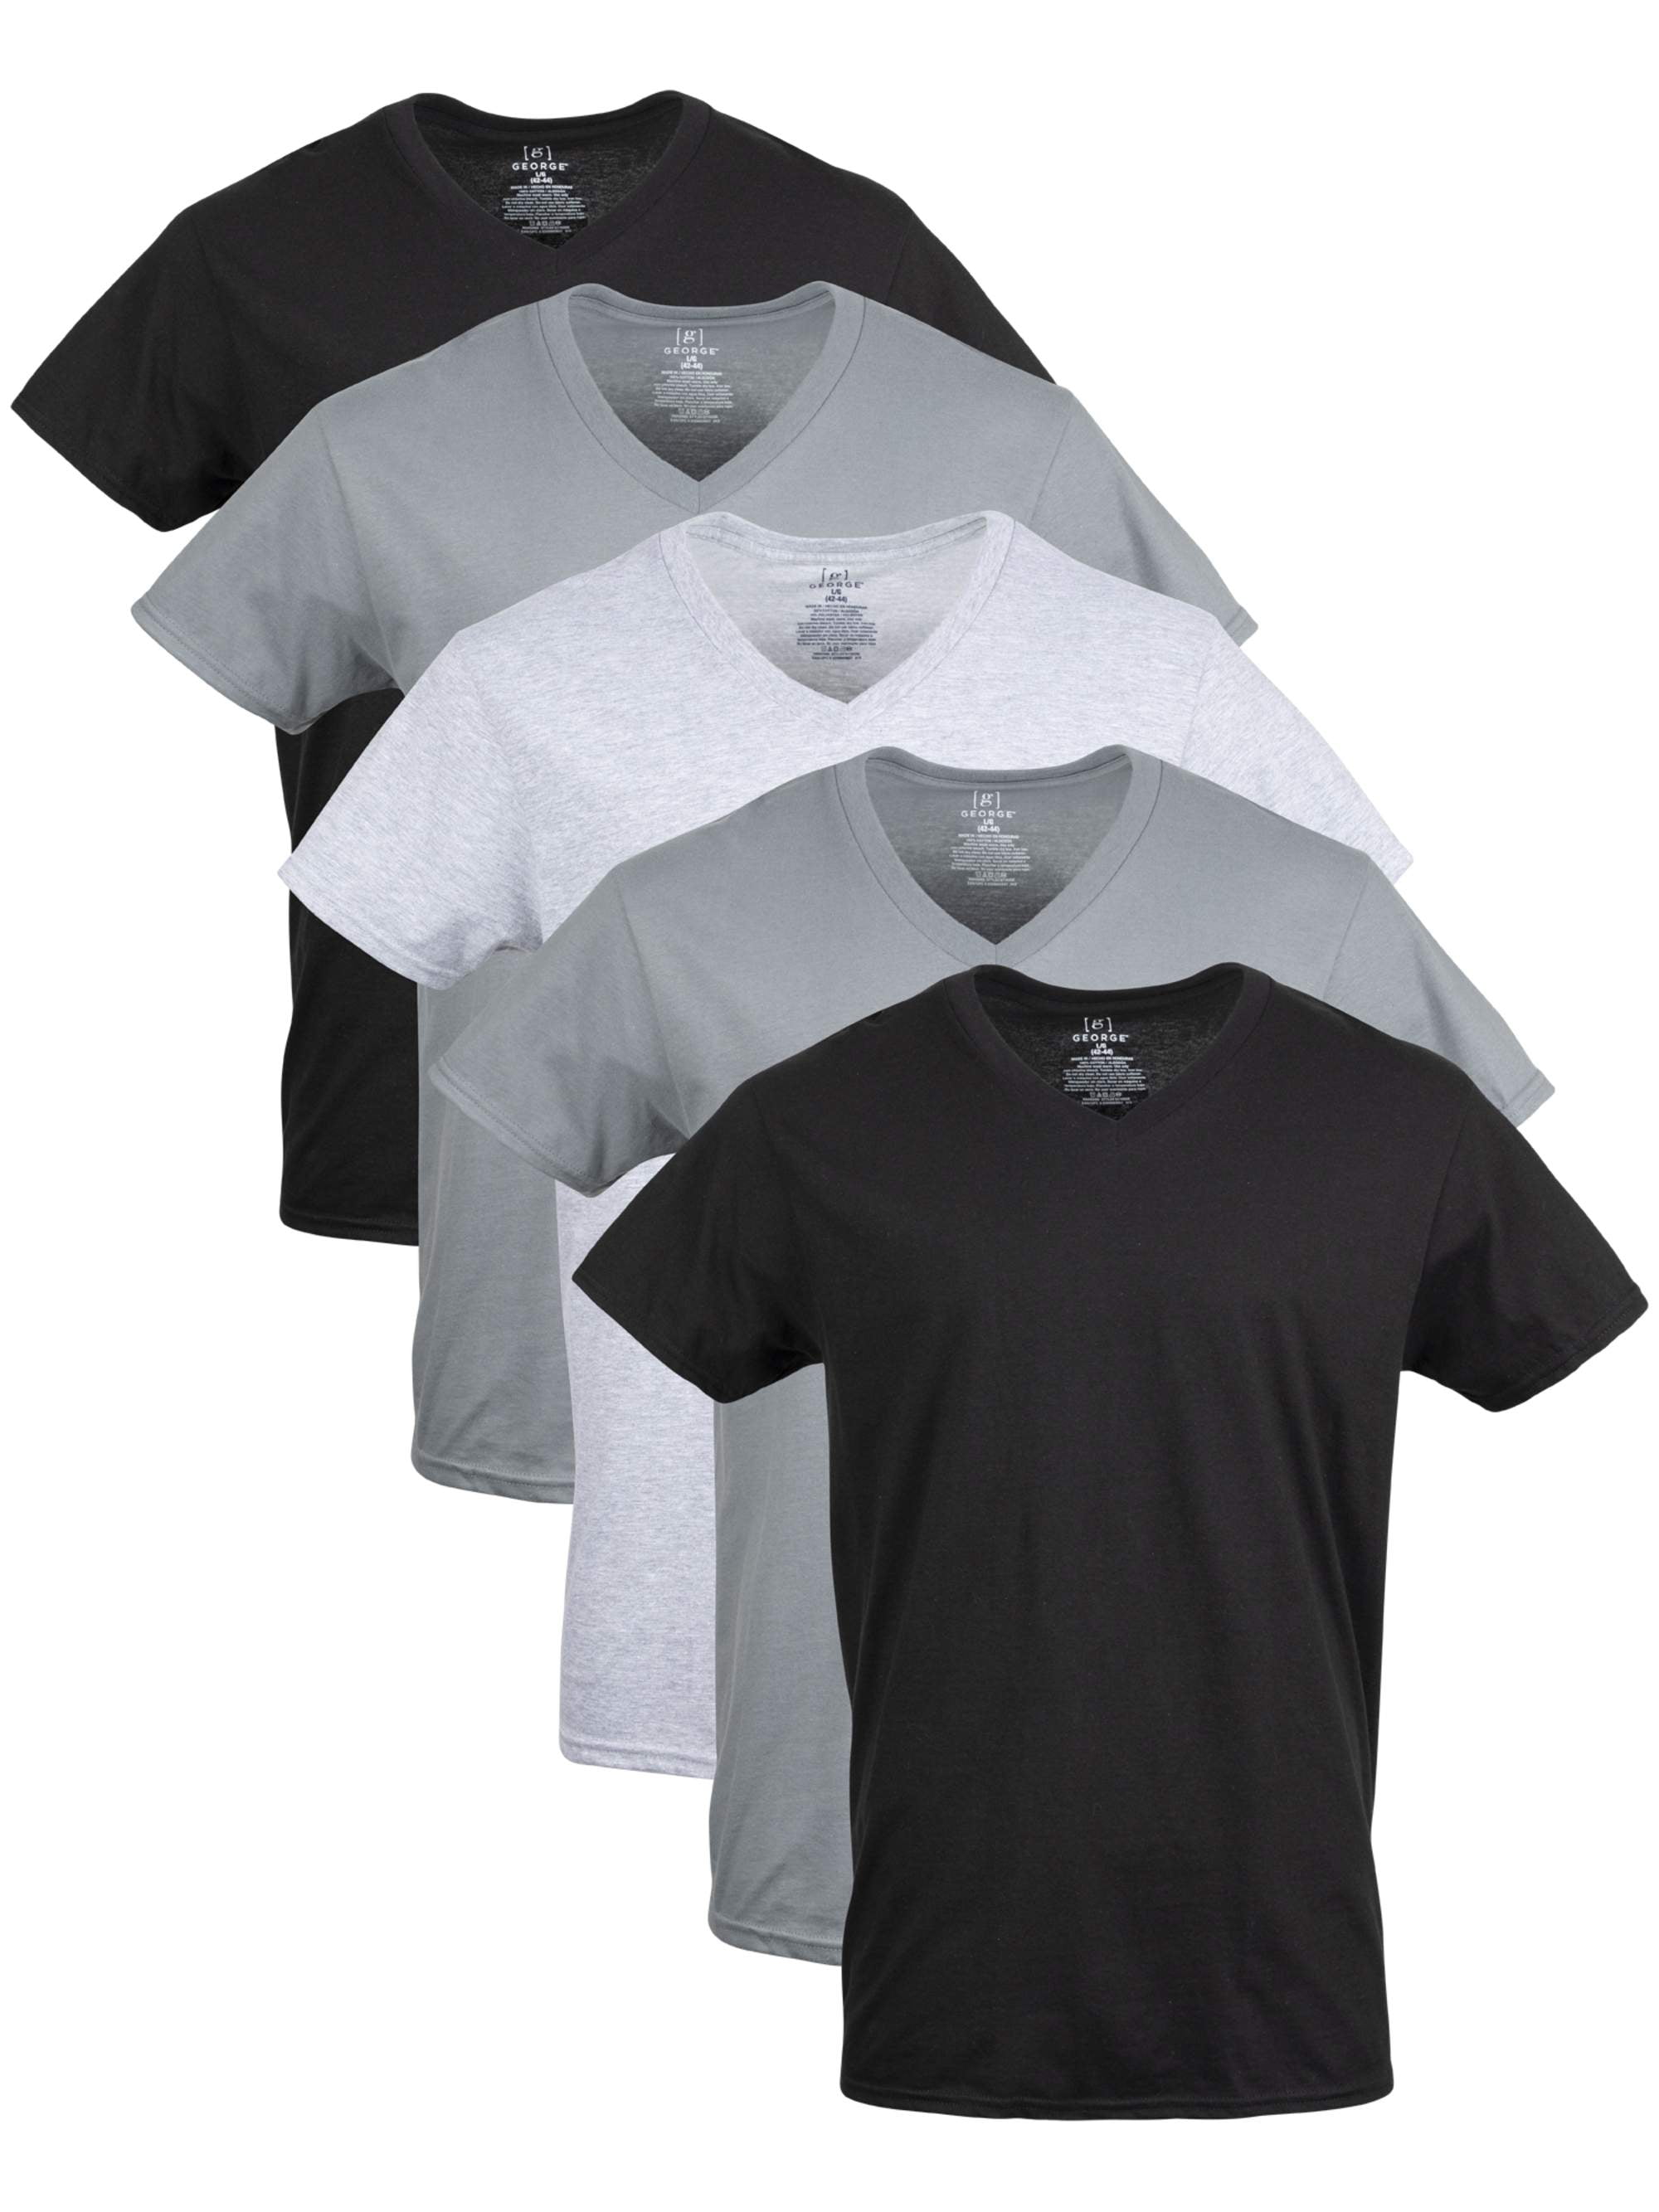 George Men's V-Neck T-shirts, 5-Pack - Walmart.com